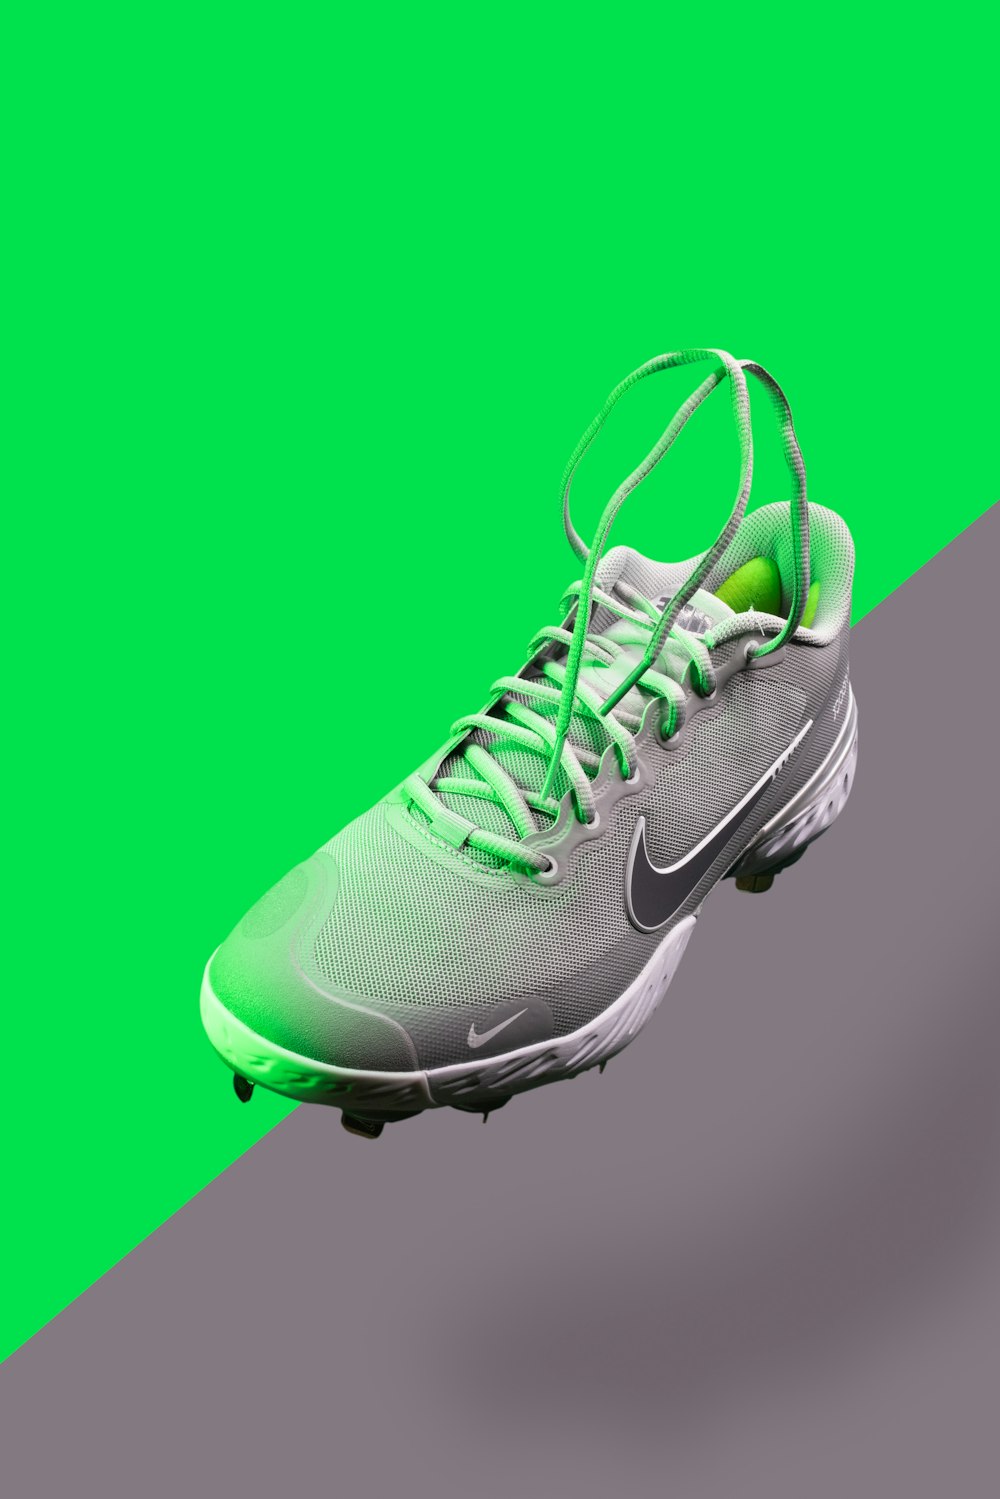 Scarpa da ginnastica Nike verde e bianca